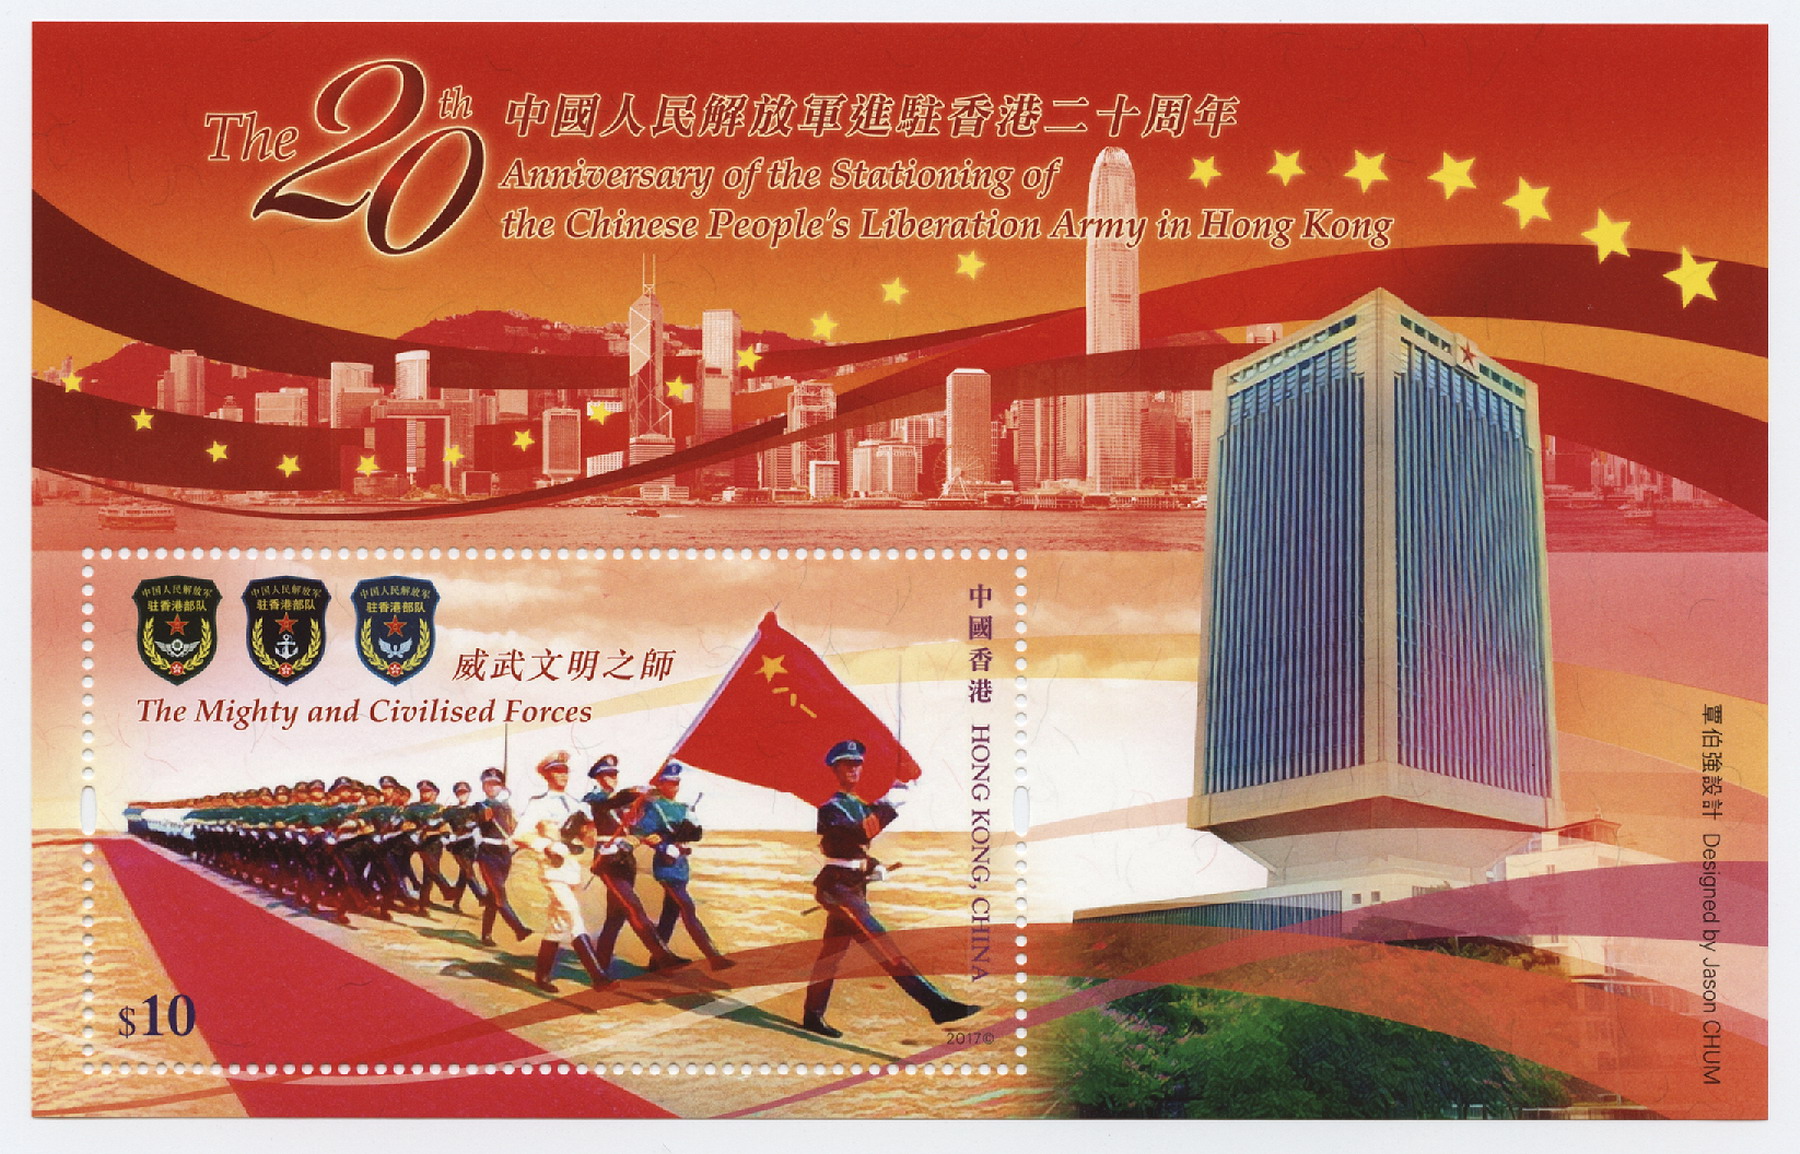 2017-6-20 中国人民解放军进驻香港20周年-1_resize.jpg